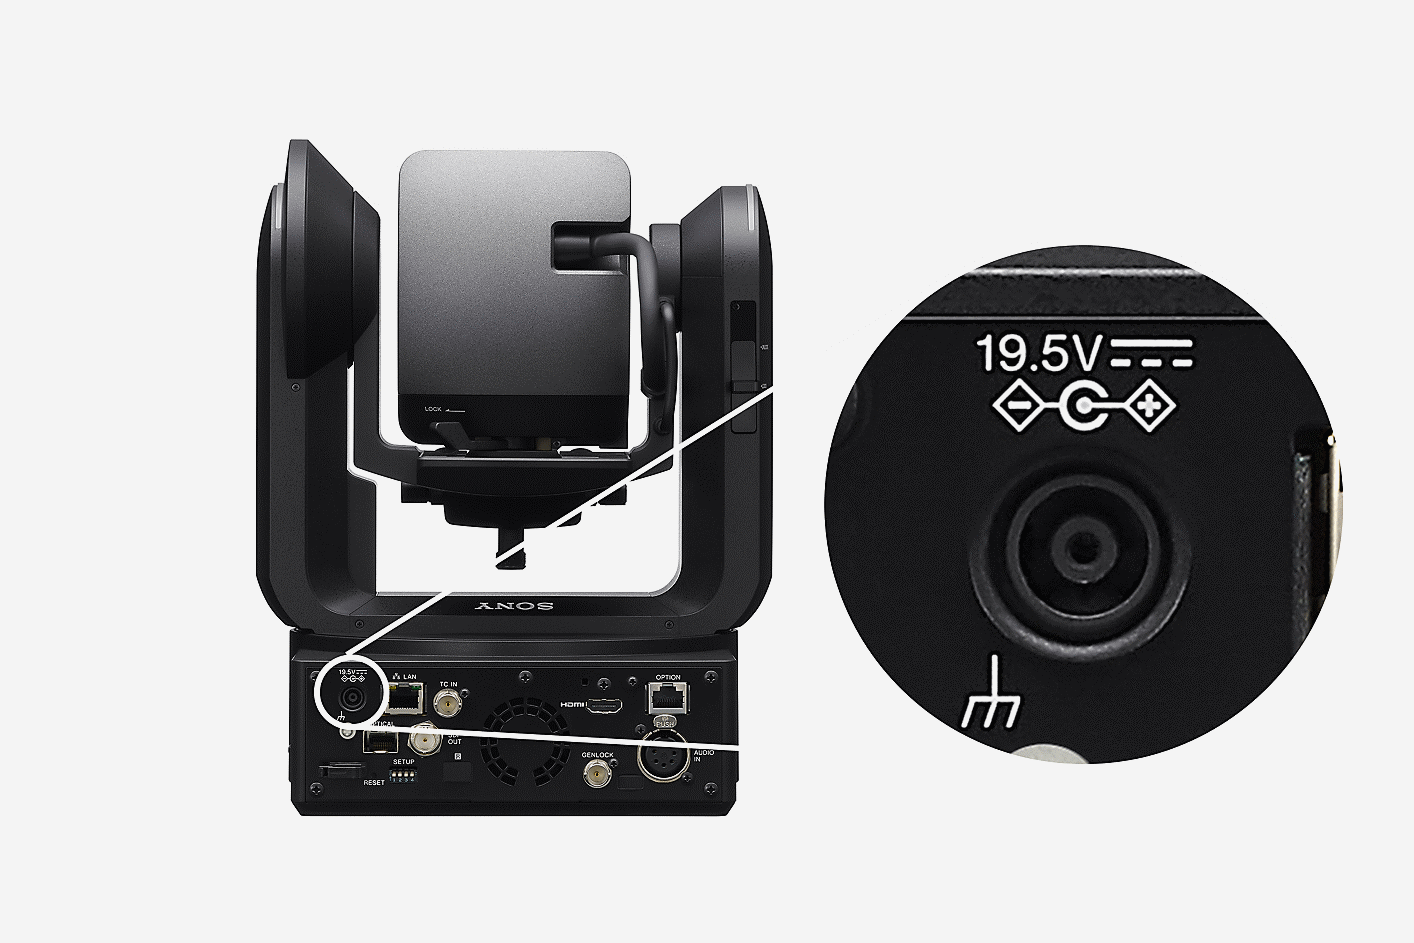 Obrázok fotoaparátu FR7 s konektorom DC IN